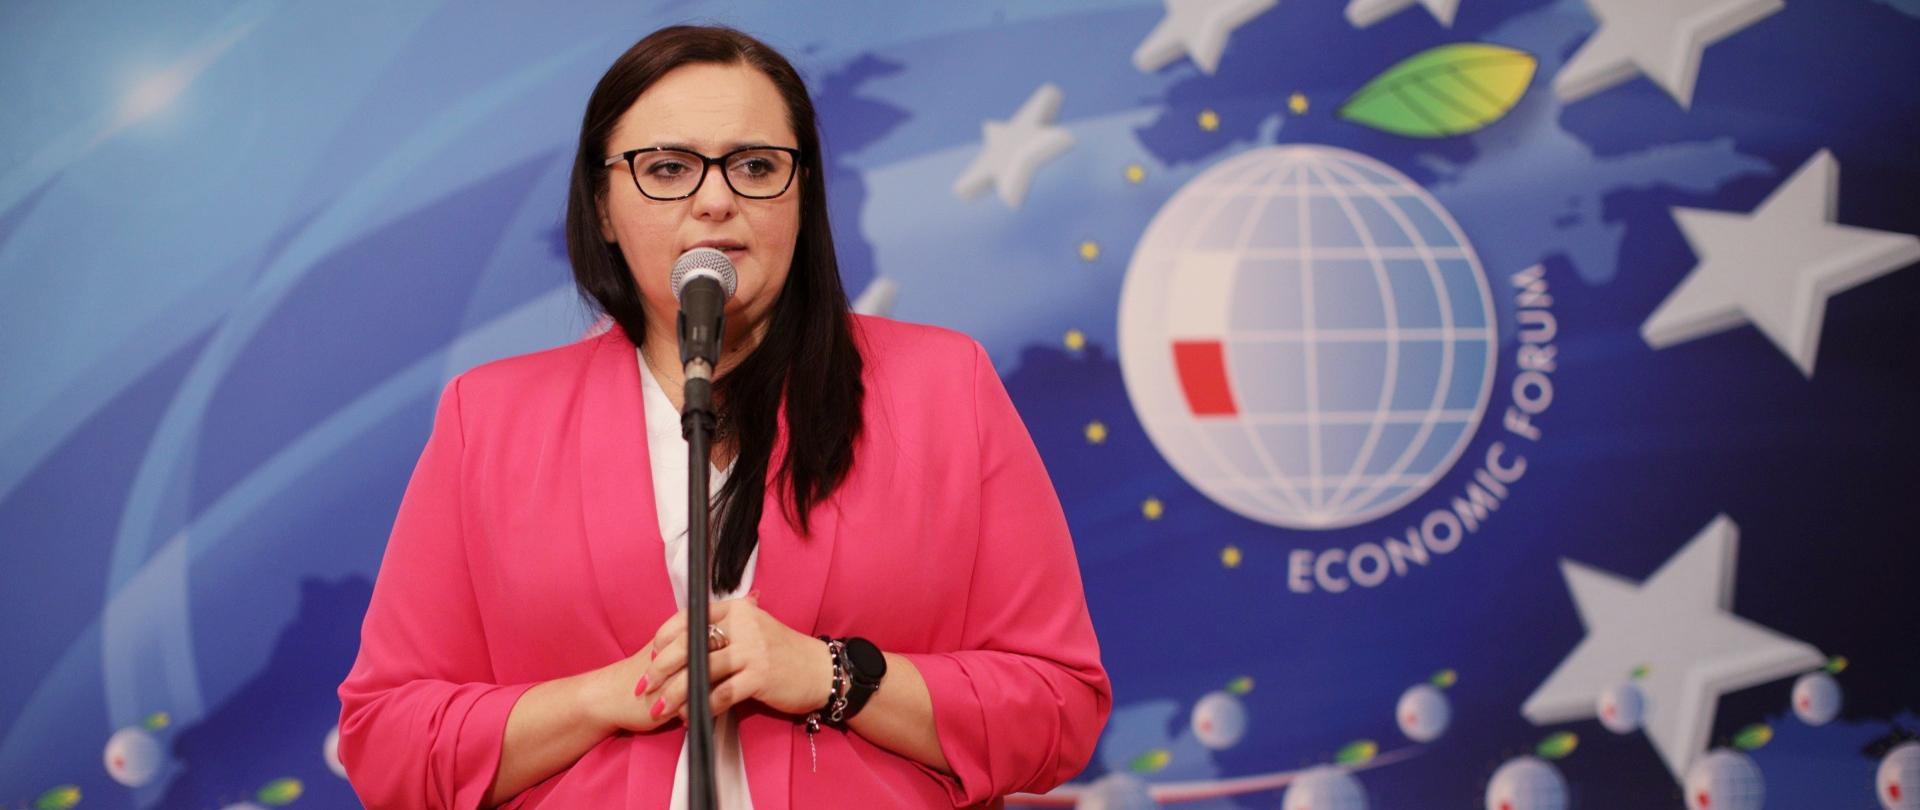 Minister Jarosińska-Jedynak mówi do mikrofonu, za nią jest ścianka promocyjna Economic Forum